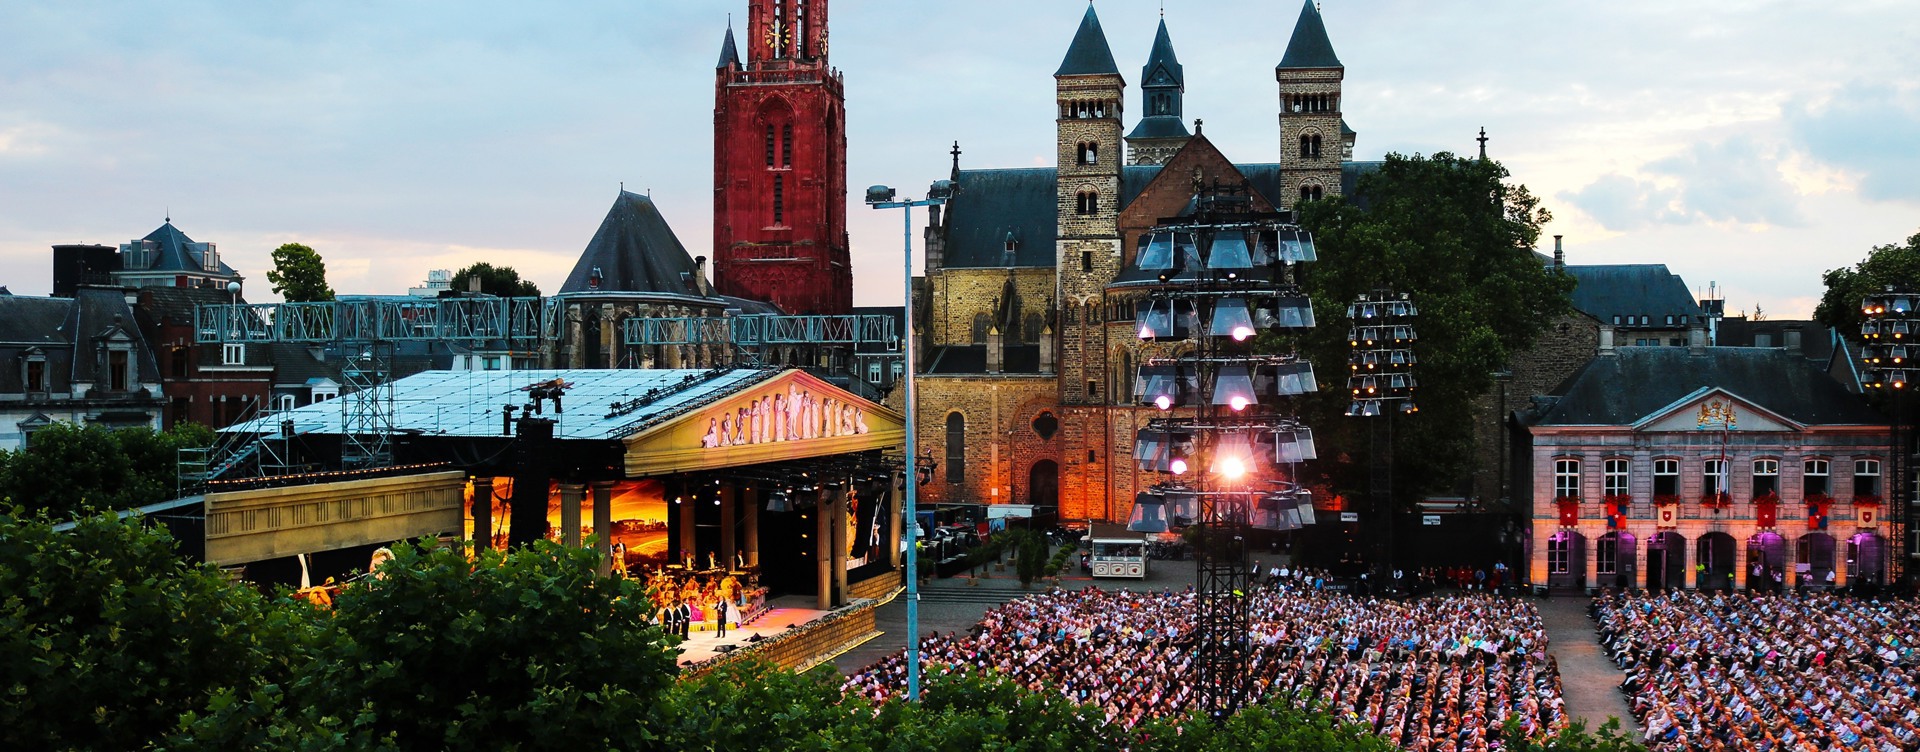 Combineer de zomeravondconcerten van André Rieu
met een hotelovernachting in Maastricht